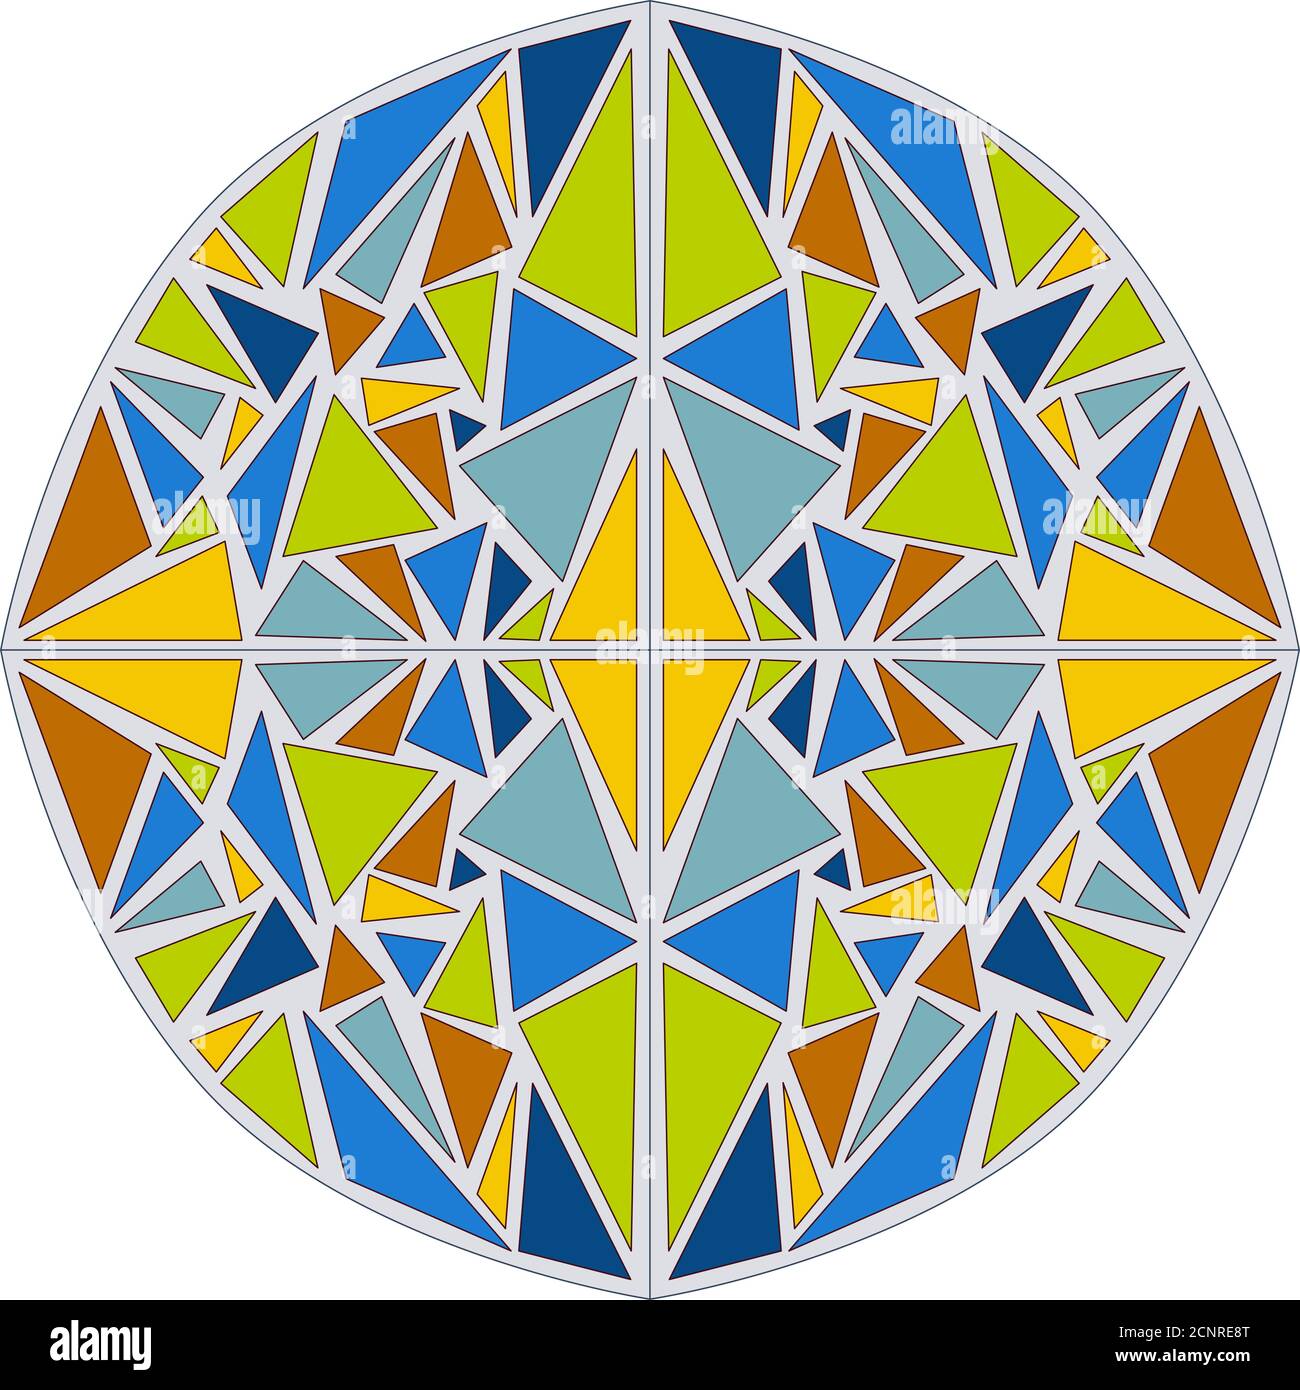 Mosaik Kreis Vektor-Illustration. Farbenfrohe, isolierte Muster. Druck auf Papier, Stoff, Keramik. Stock Vektor